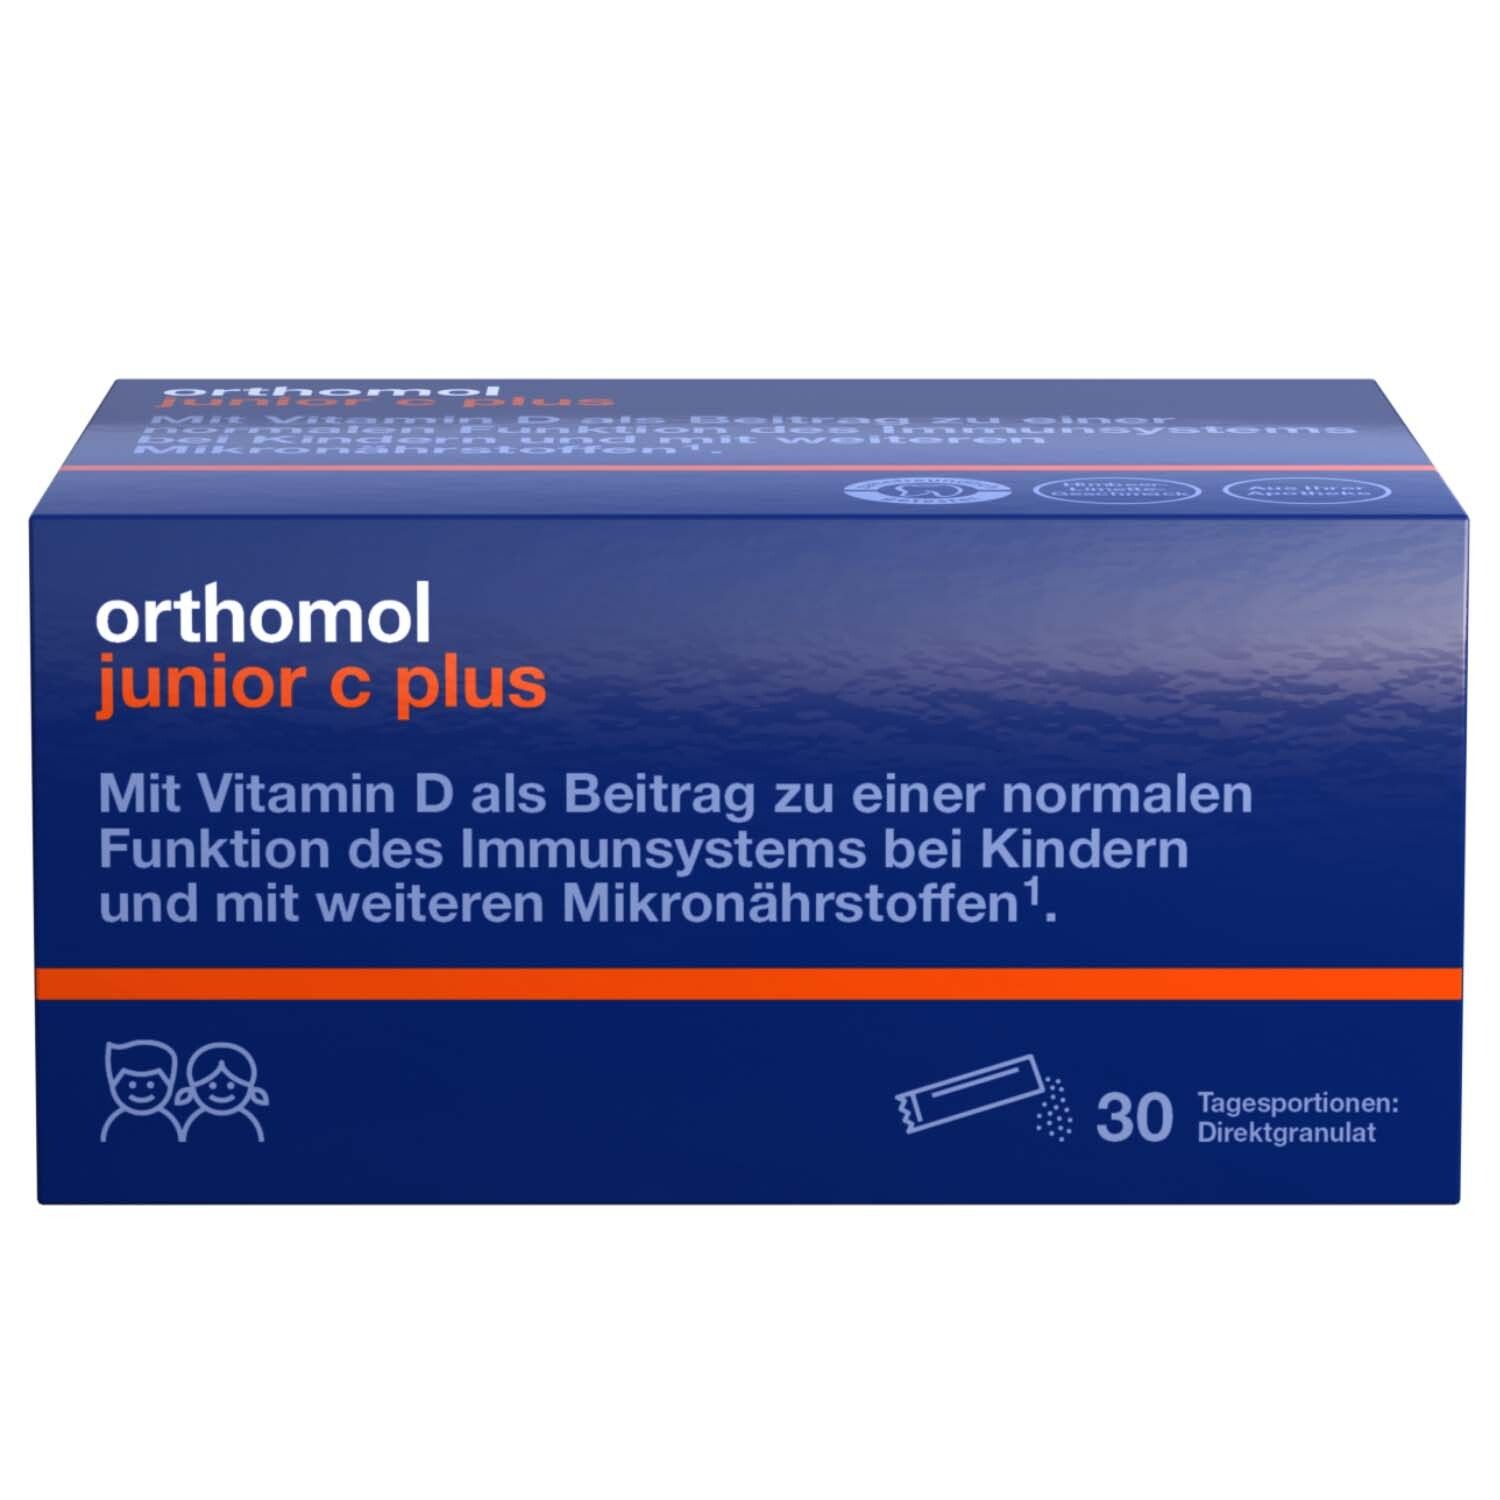 Orthomol junior C plus - mit Vitamin C als Beitrag zu einer normalen Funktion des Immunsystems - Himbeer/Limetten-Geschm